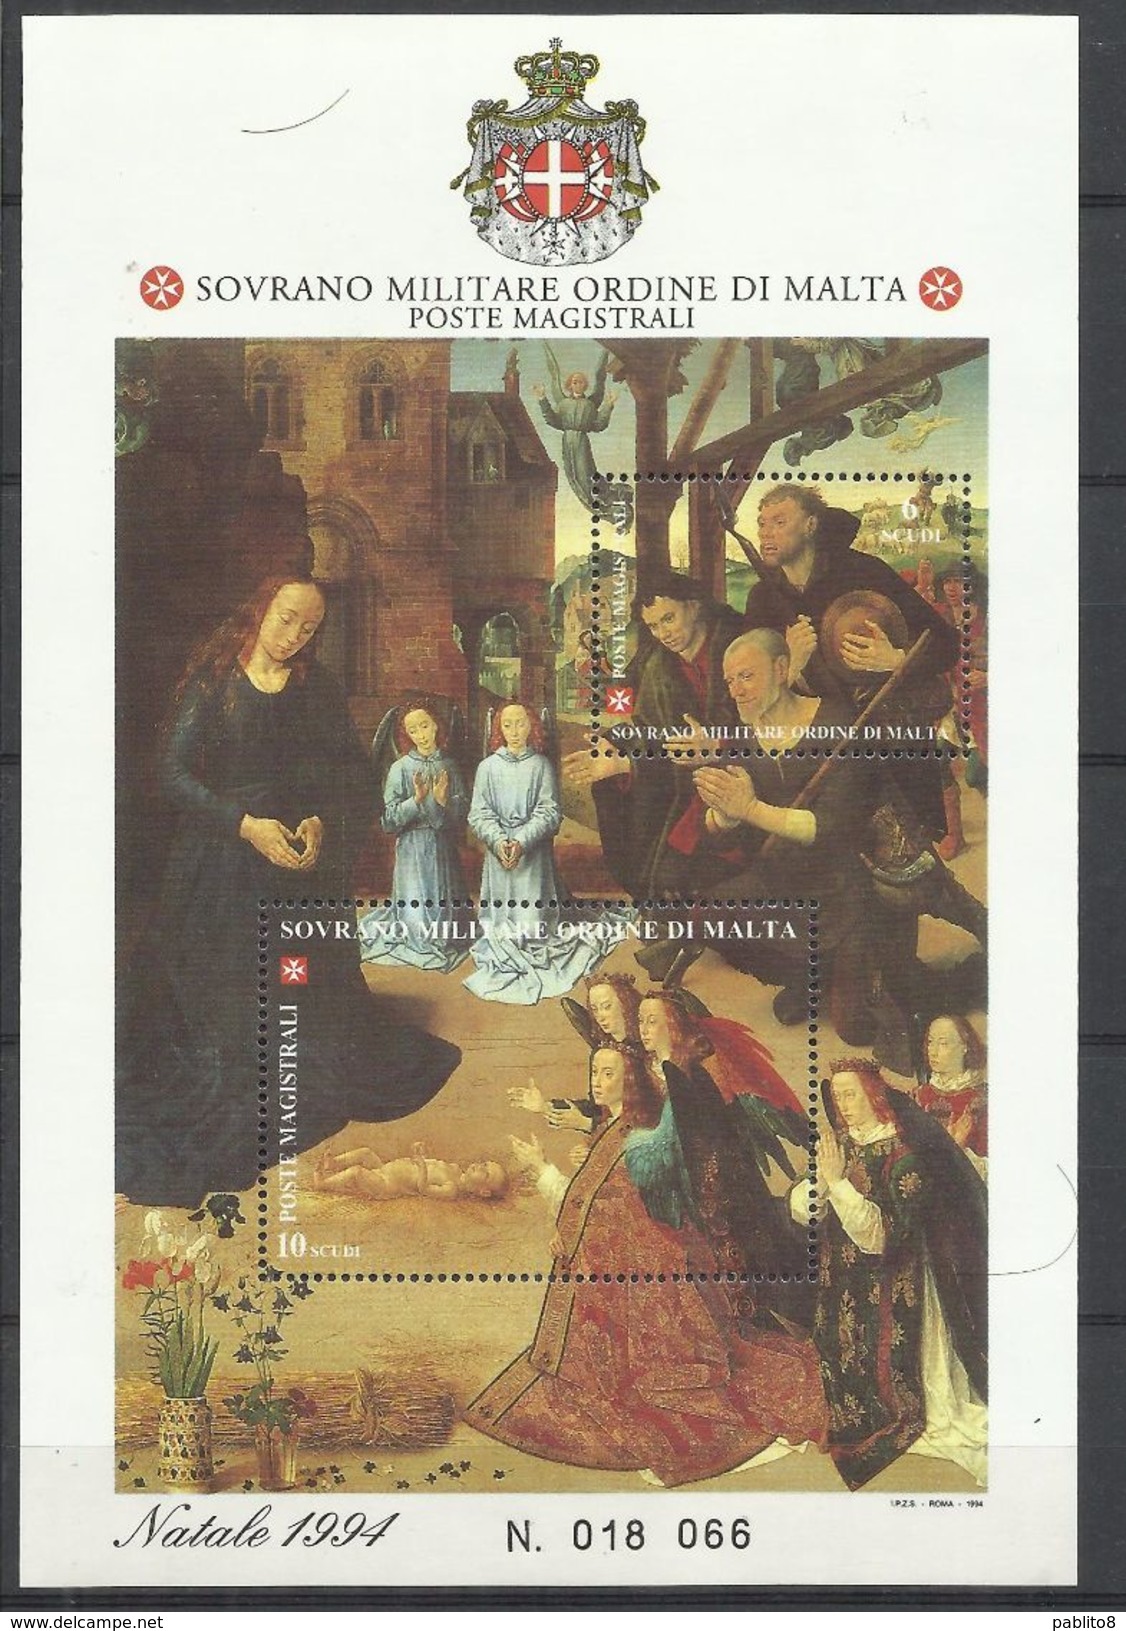 SMOM SOVRANO ORDINE MILITARE DI MALTA 1994 NATALE CHRISTMAS NOEL WEIHNACHTEN BLOCCO FOGLIETTO BLOCK SHEET MNH - Malta (la Orden De)